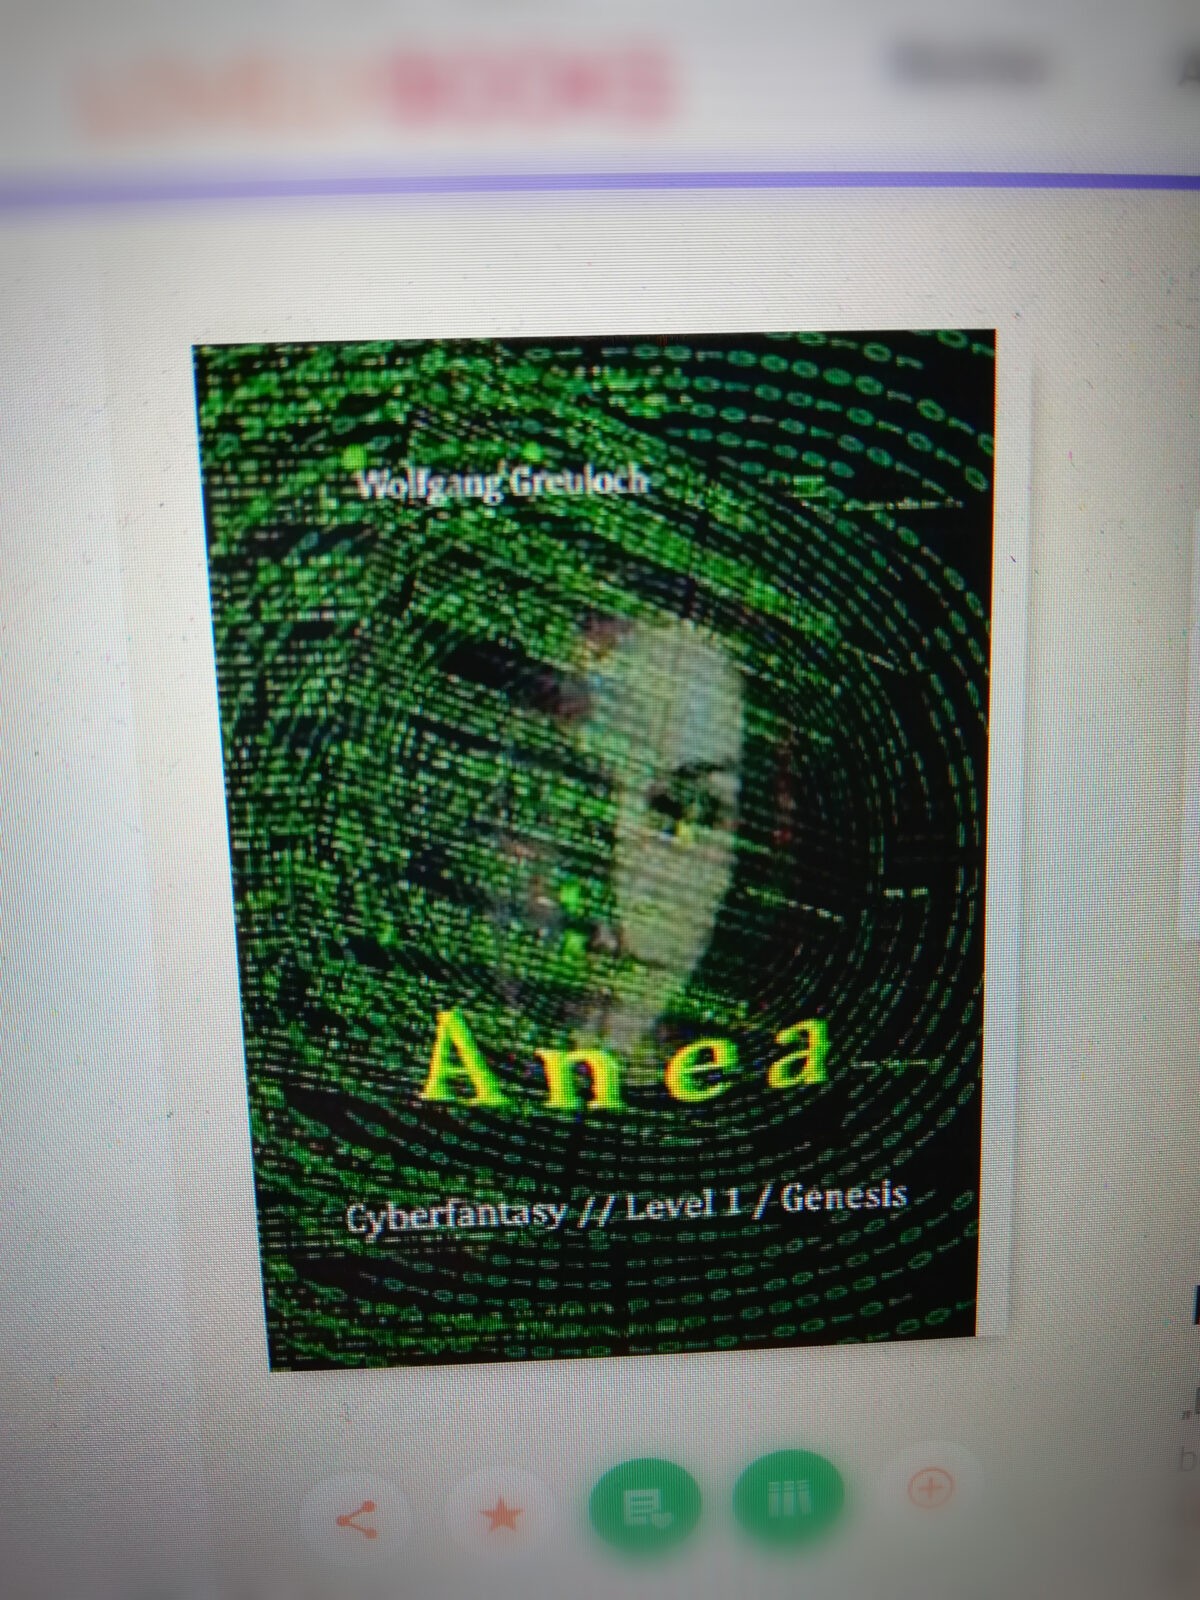 Rezension "Anea" von Wolfgang Greuloch - Ist es ein Computerspiel?